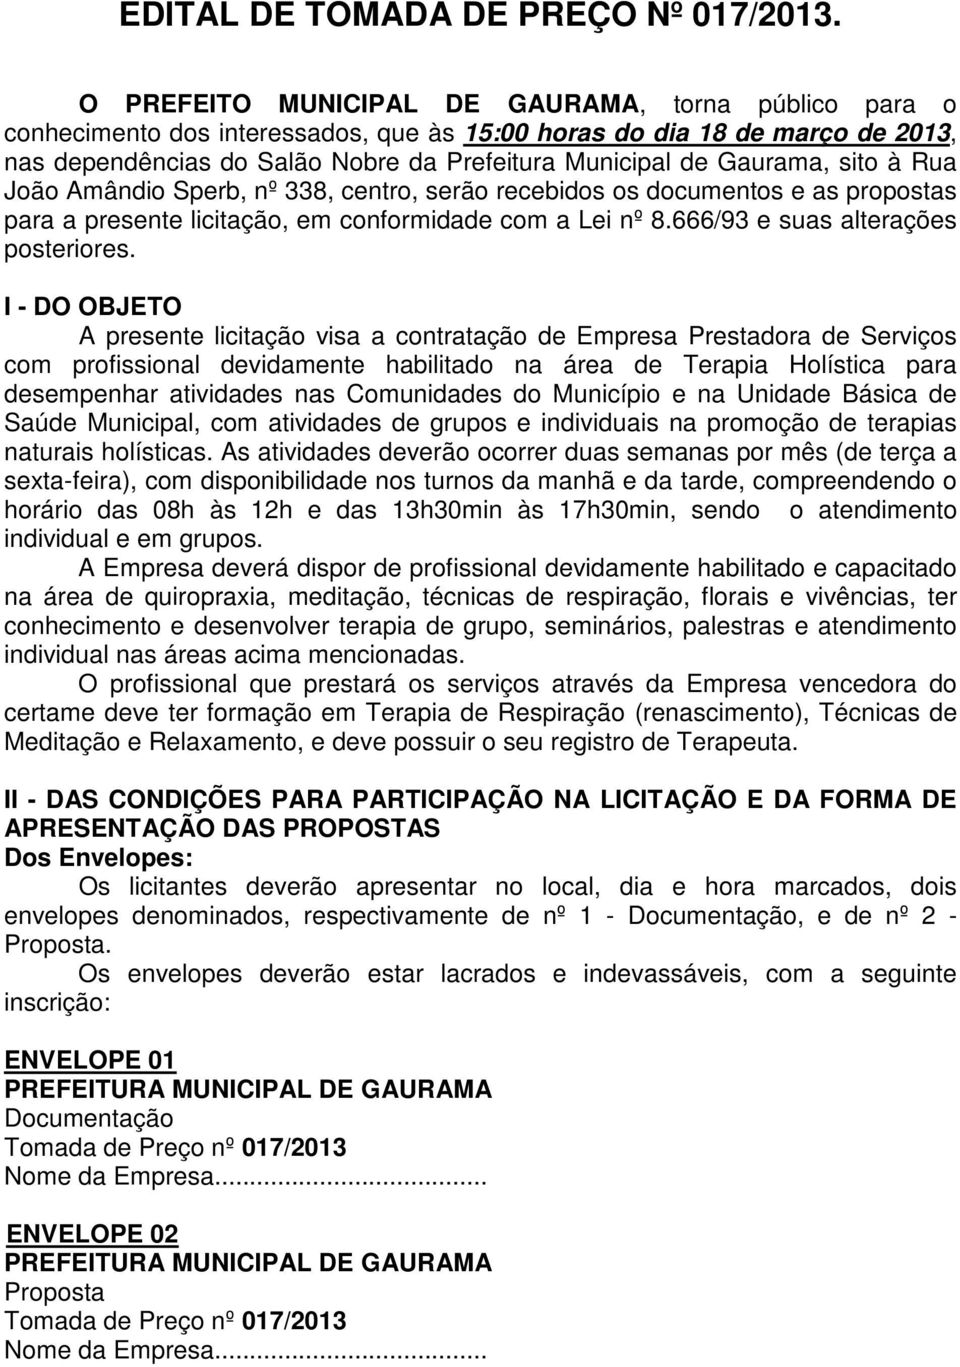 sito à Rua João Amândio Sperb, nº 338, centro, serão recebidos os documentos e as propostas para a presente licitação, em conformidade com a Lei nº 8.666/93 e suas alterações posteriores.